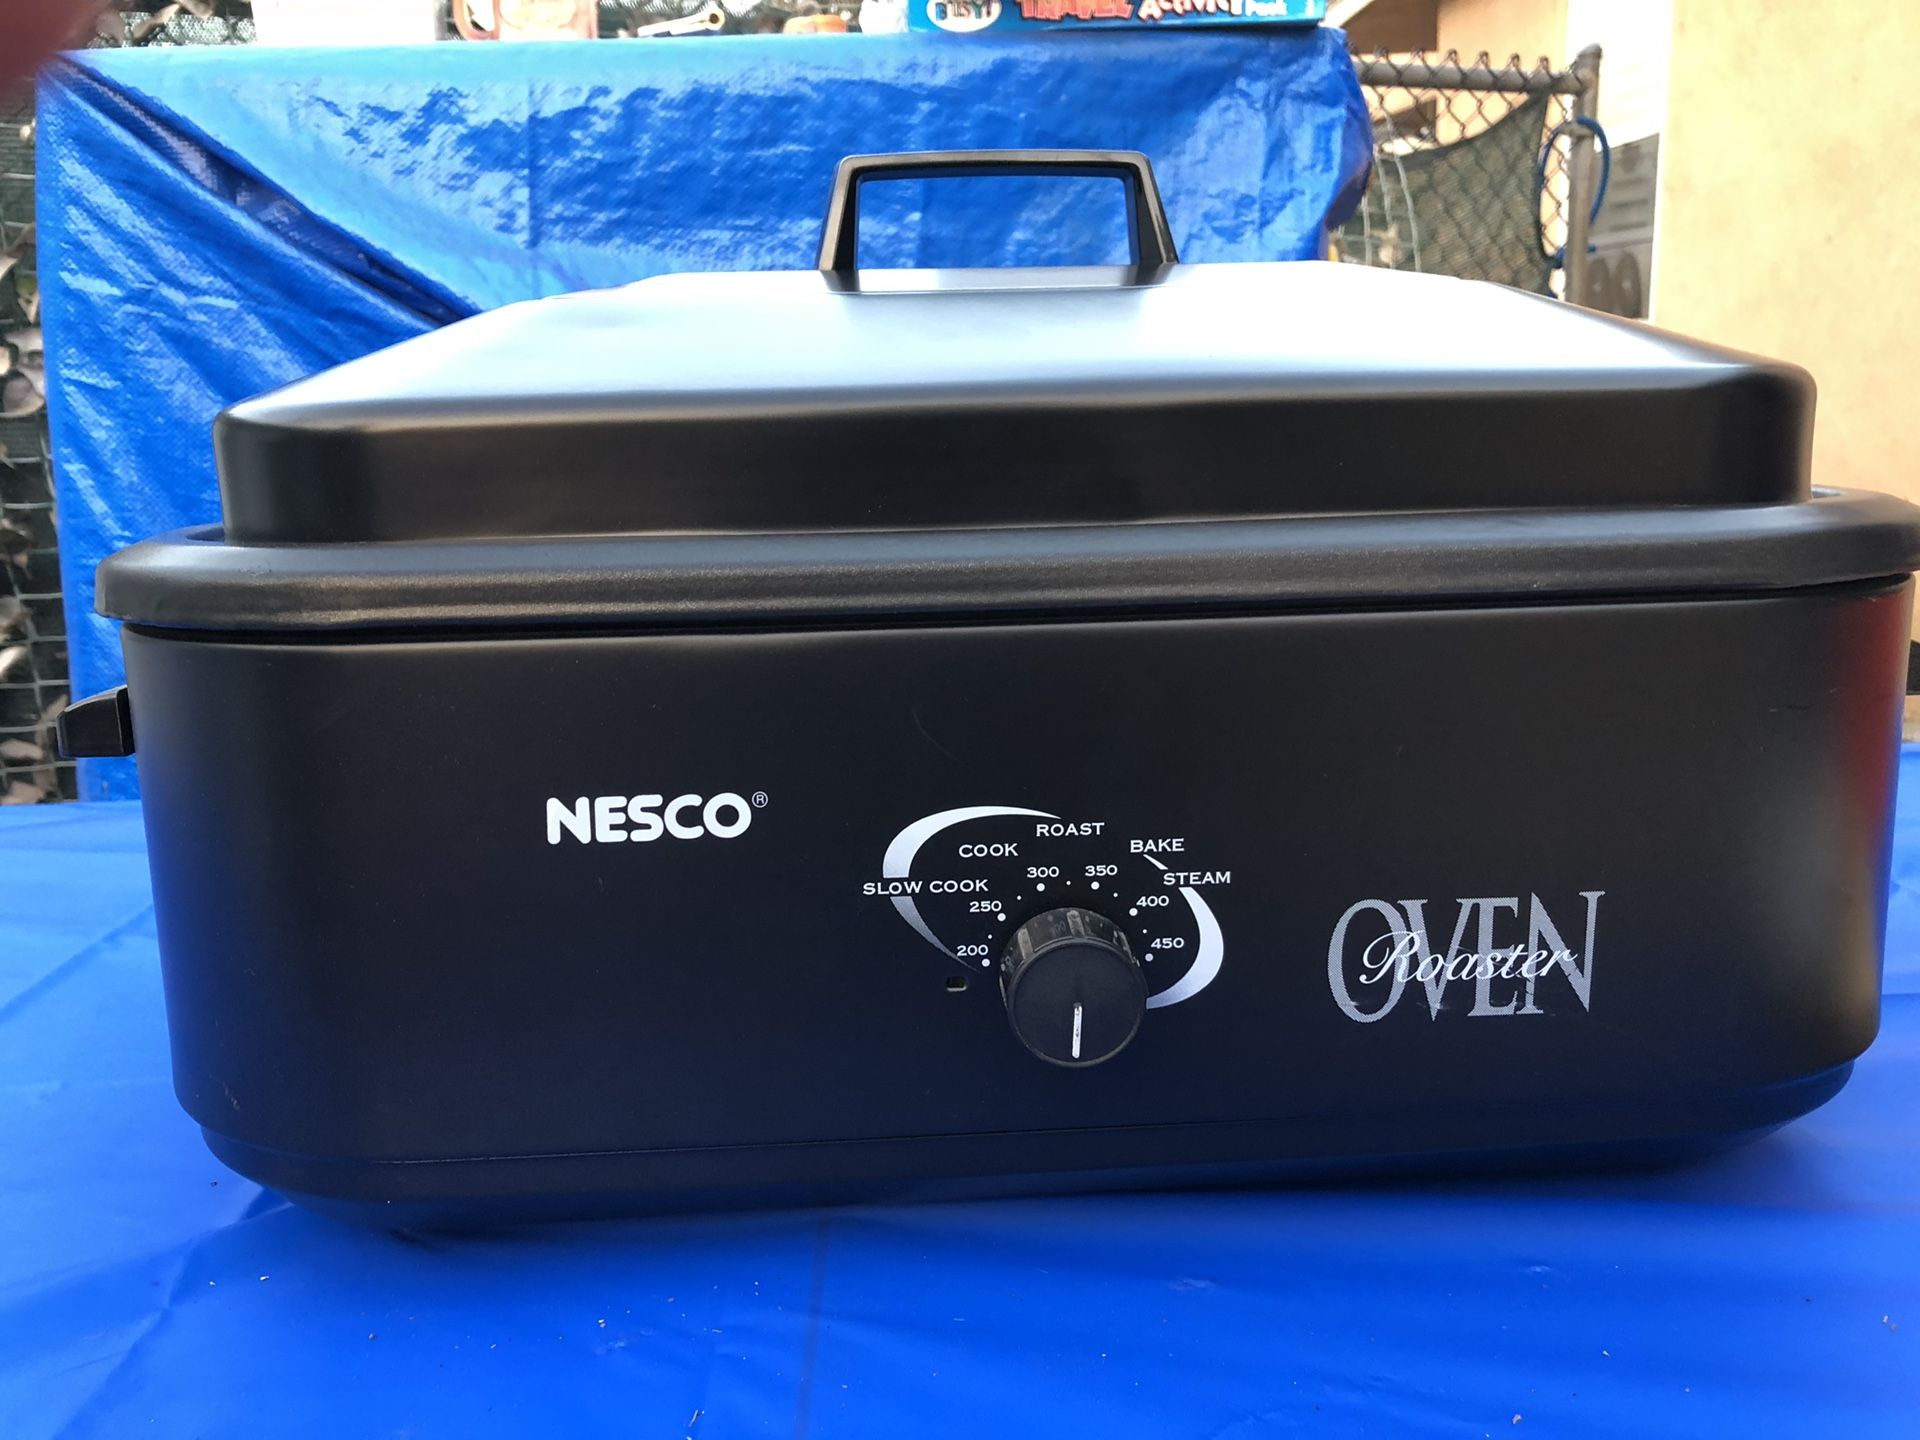 Nesco Roaster Oven with Buffet Server Kit